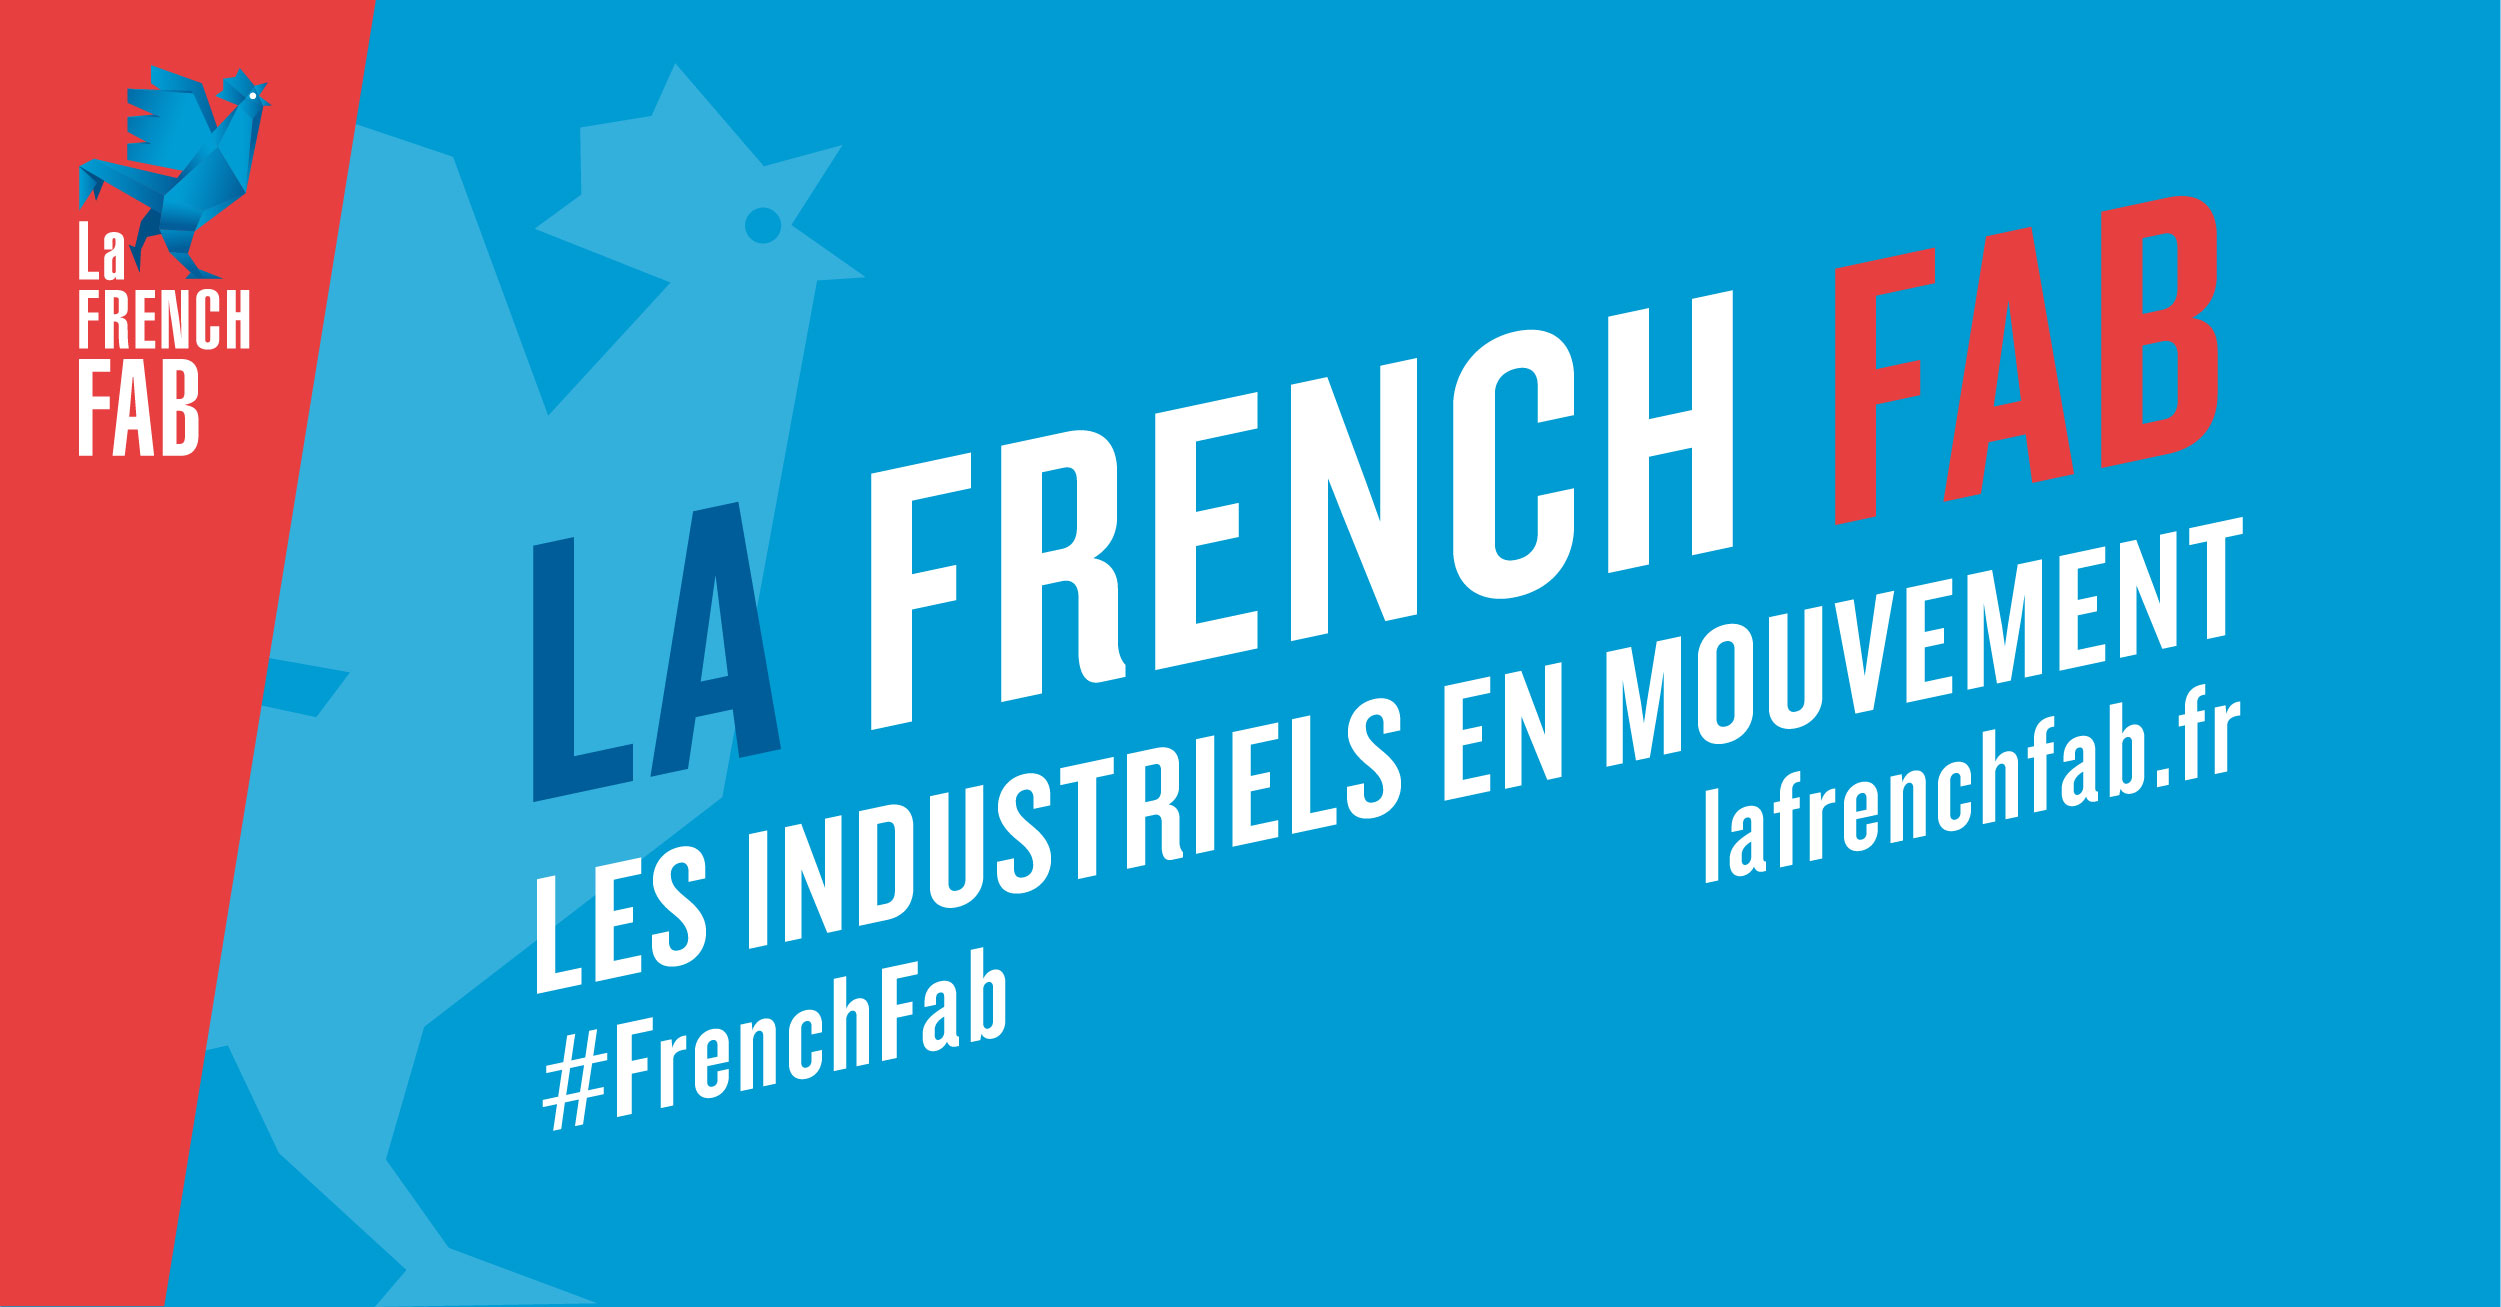 La French Fab : Les industriels en mouvement